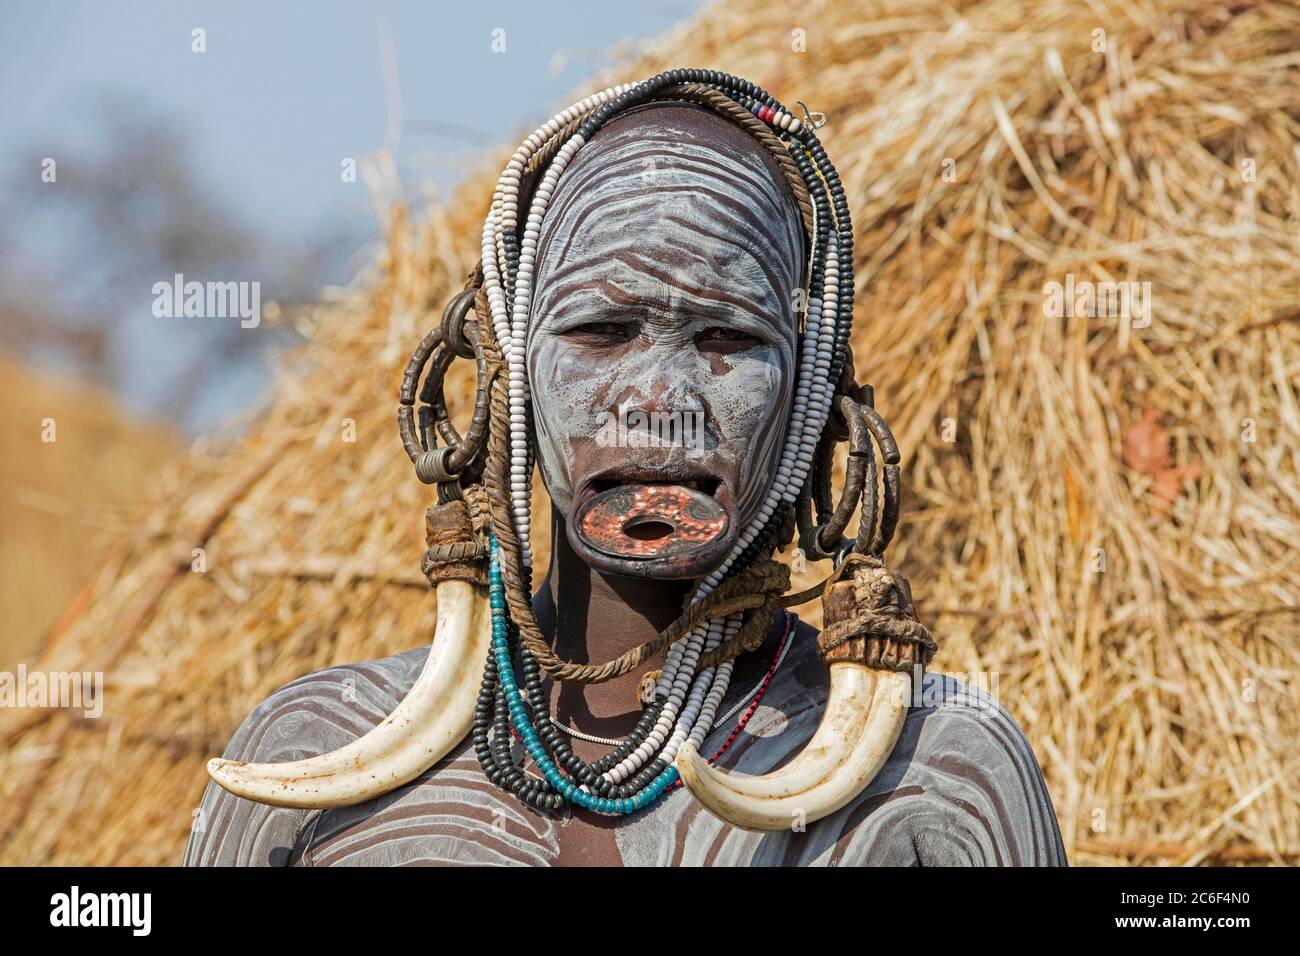 Femme peinte de la tribu Mursi portant une plaque à lèvres et d'énormes boucles d'oreilles de défenses dans le parc national de Mago, Jinka, zone de Debub Omo, sud de l'Éthiopie, Afrique Banque D'Images